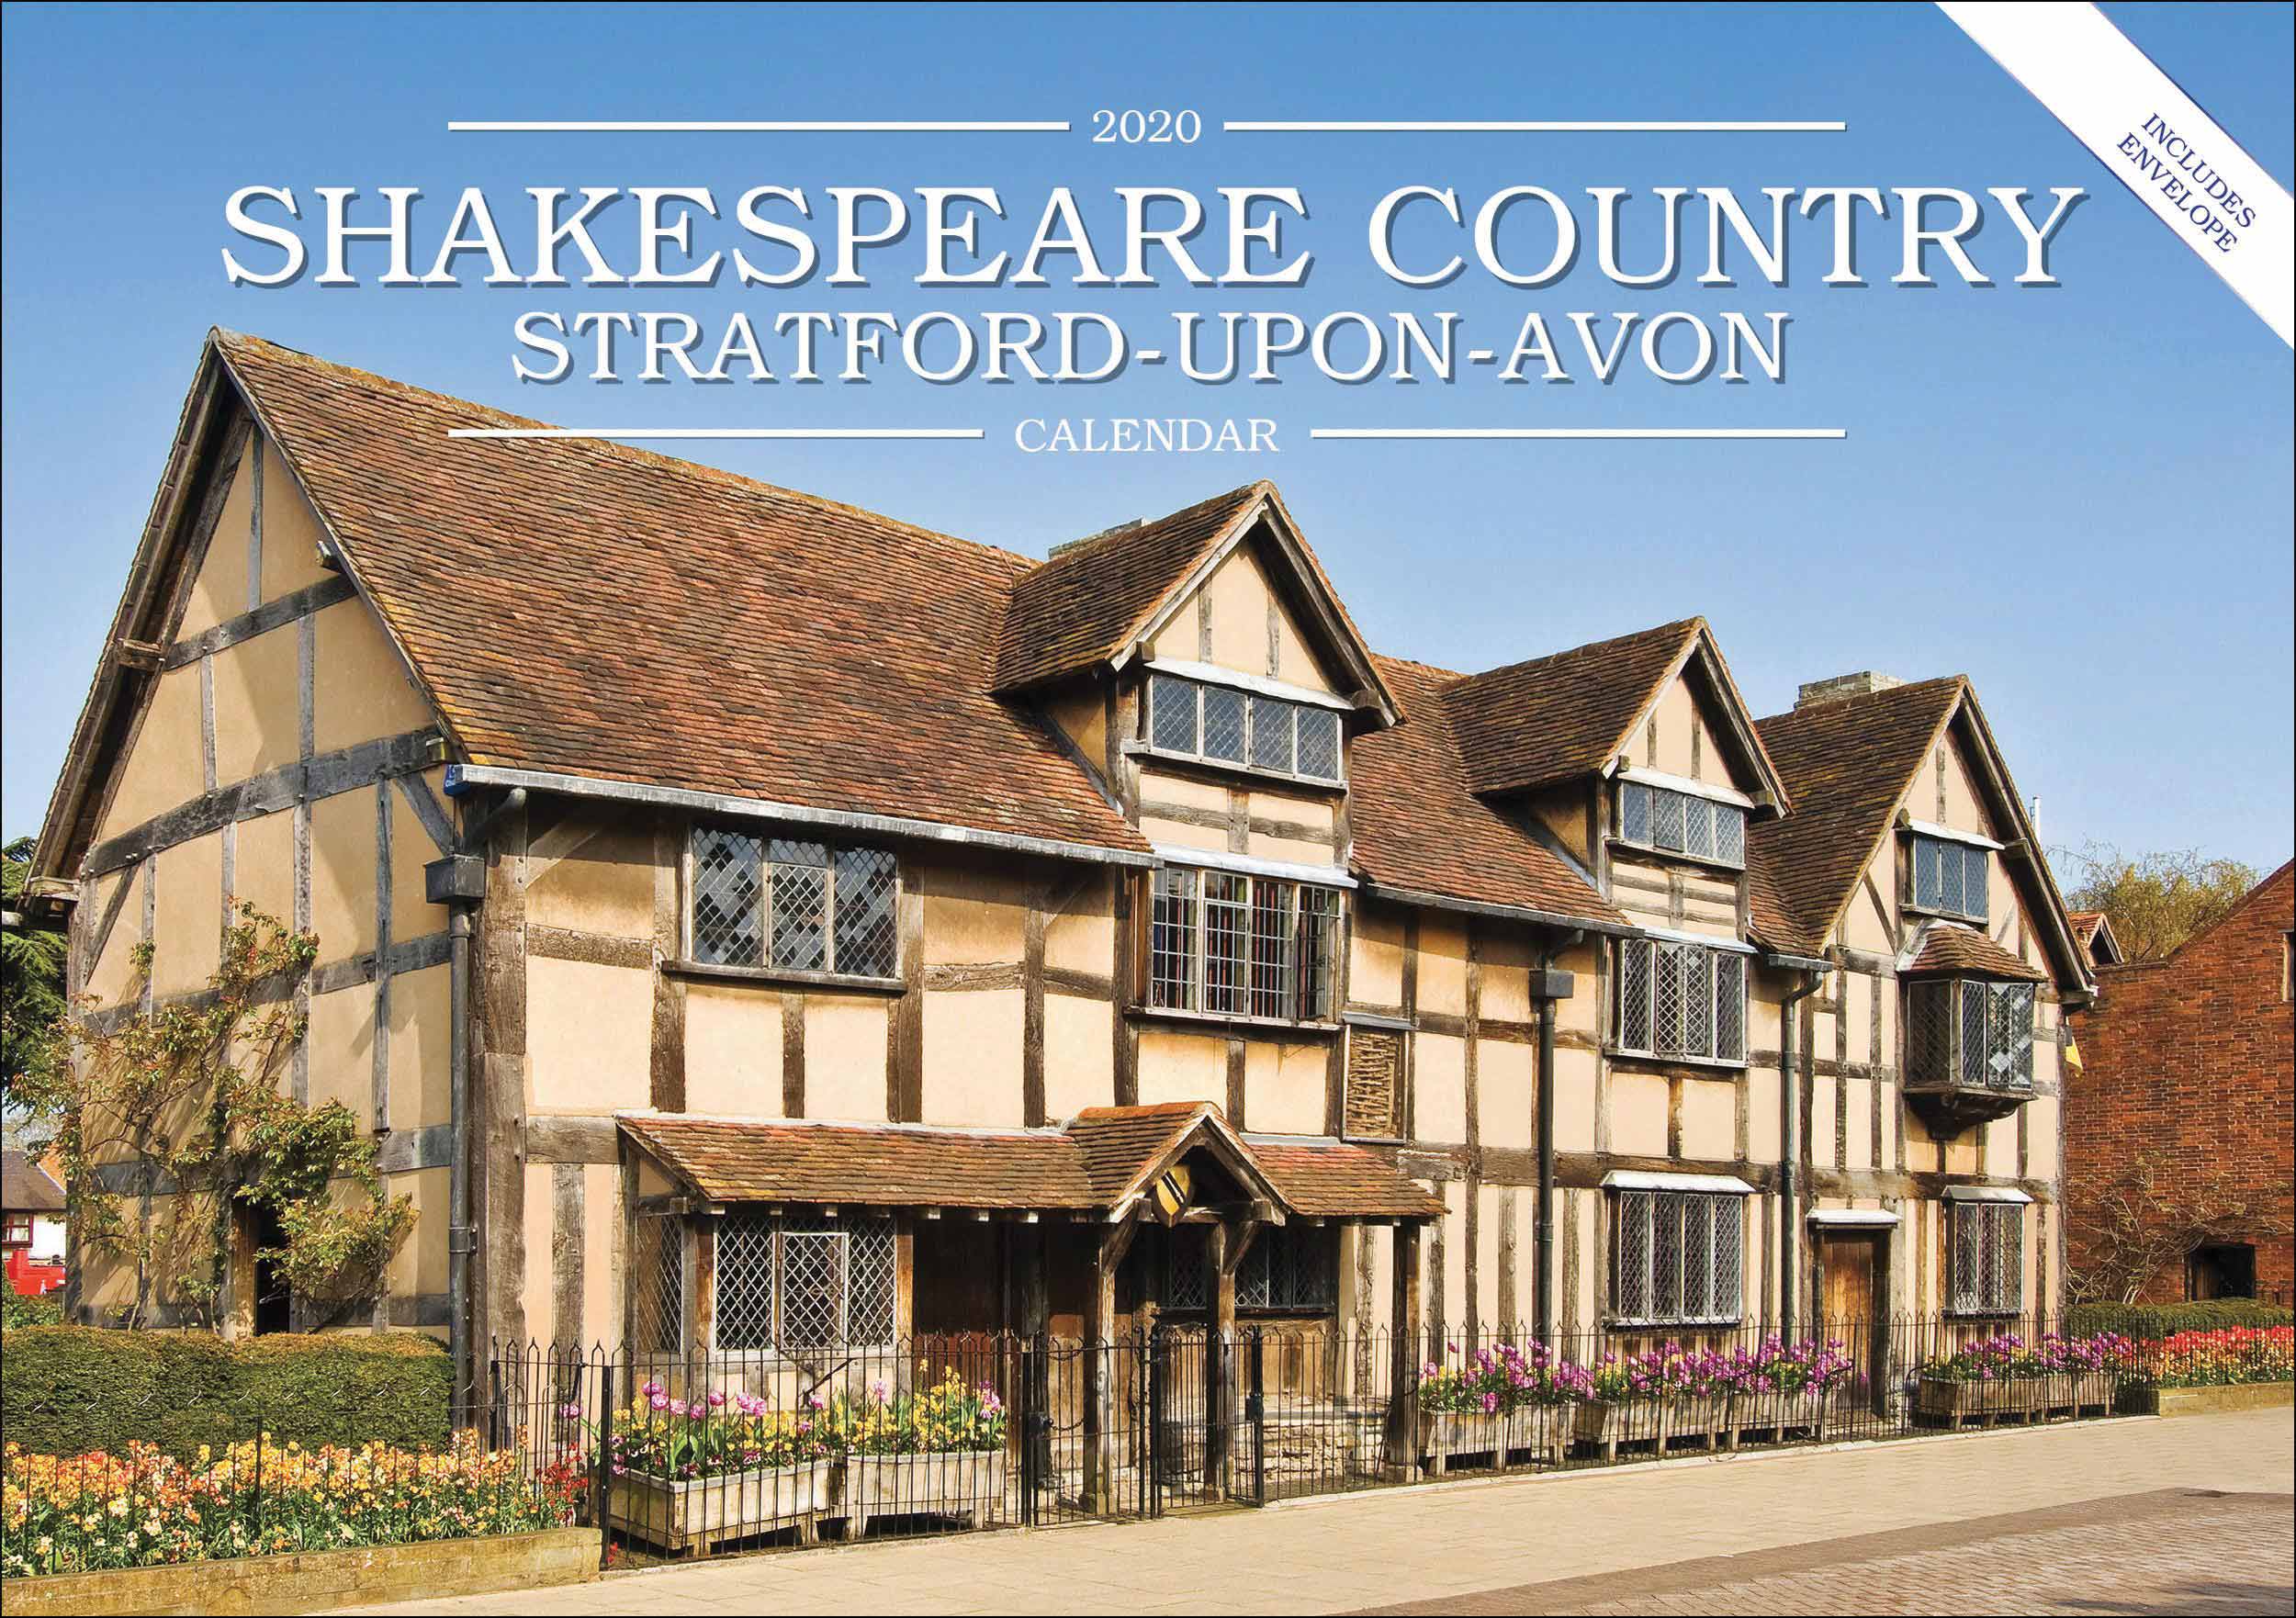 Stratford on avon. Stratford-upon-Avon Шекспир. Стратфорд-апон-эйвон Шекспир. Страфорд НАЭВОНЕ город Шекспира. Шекспир Birthplace.